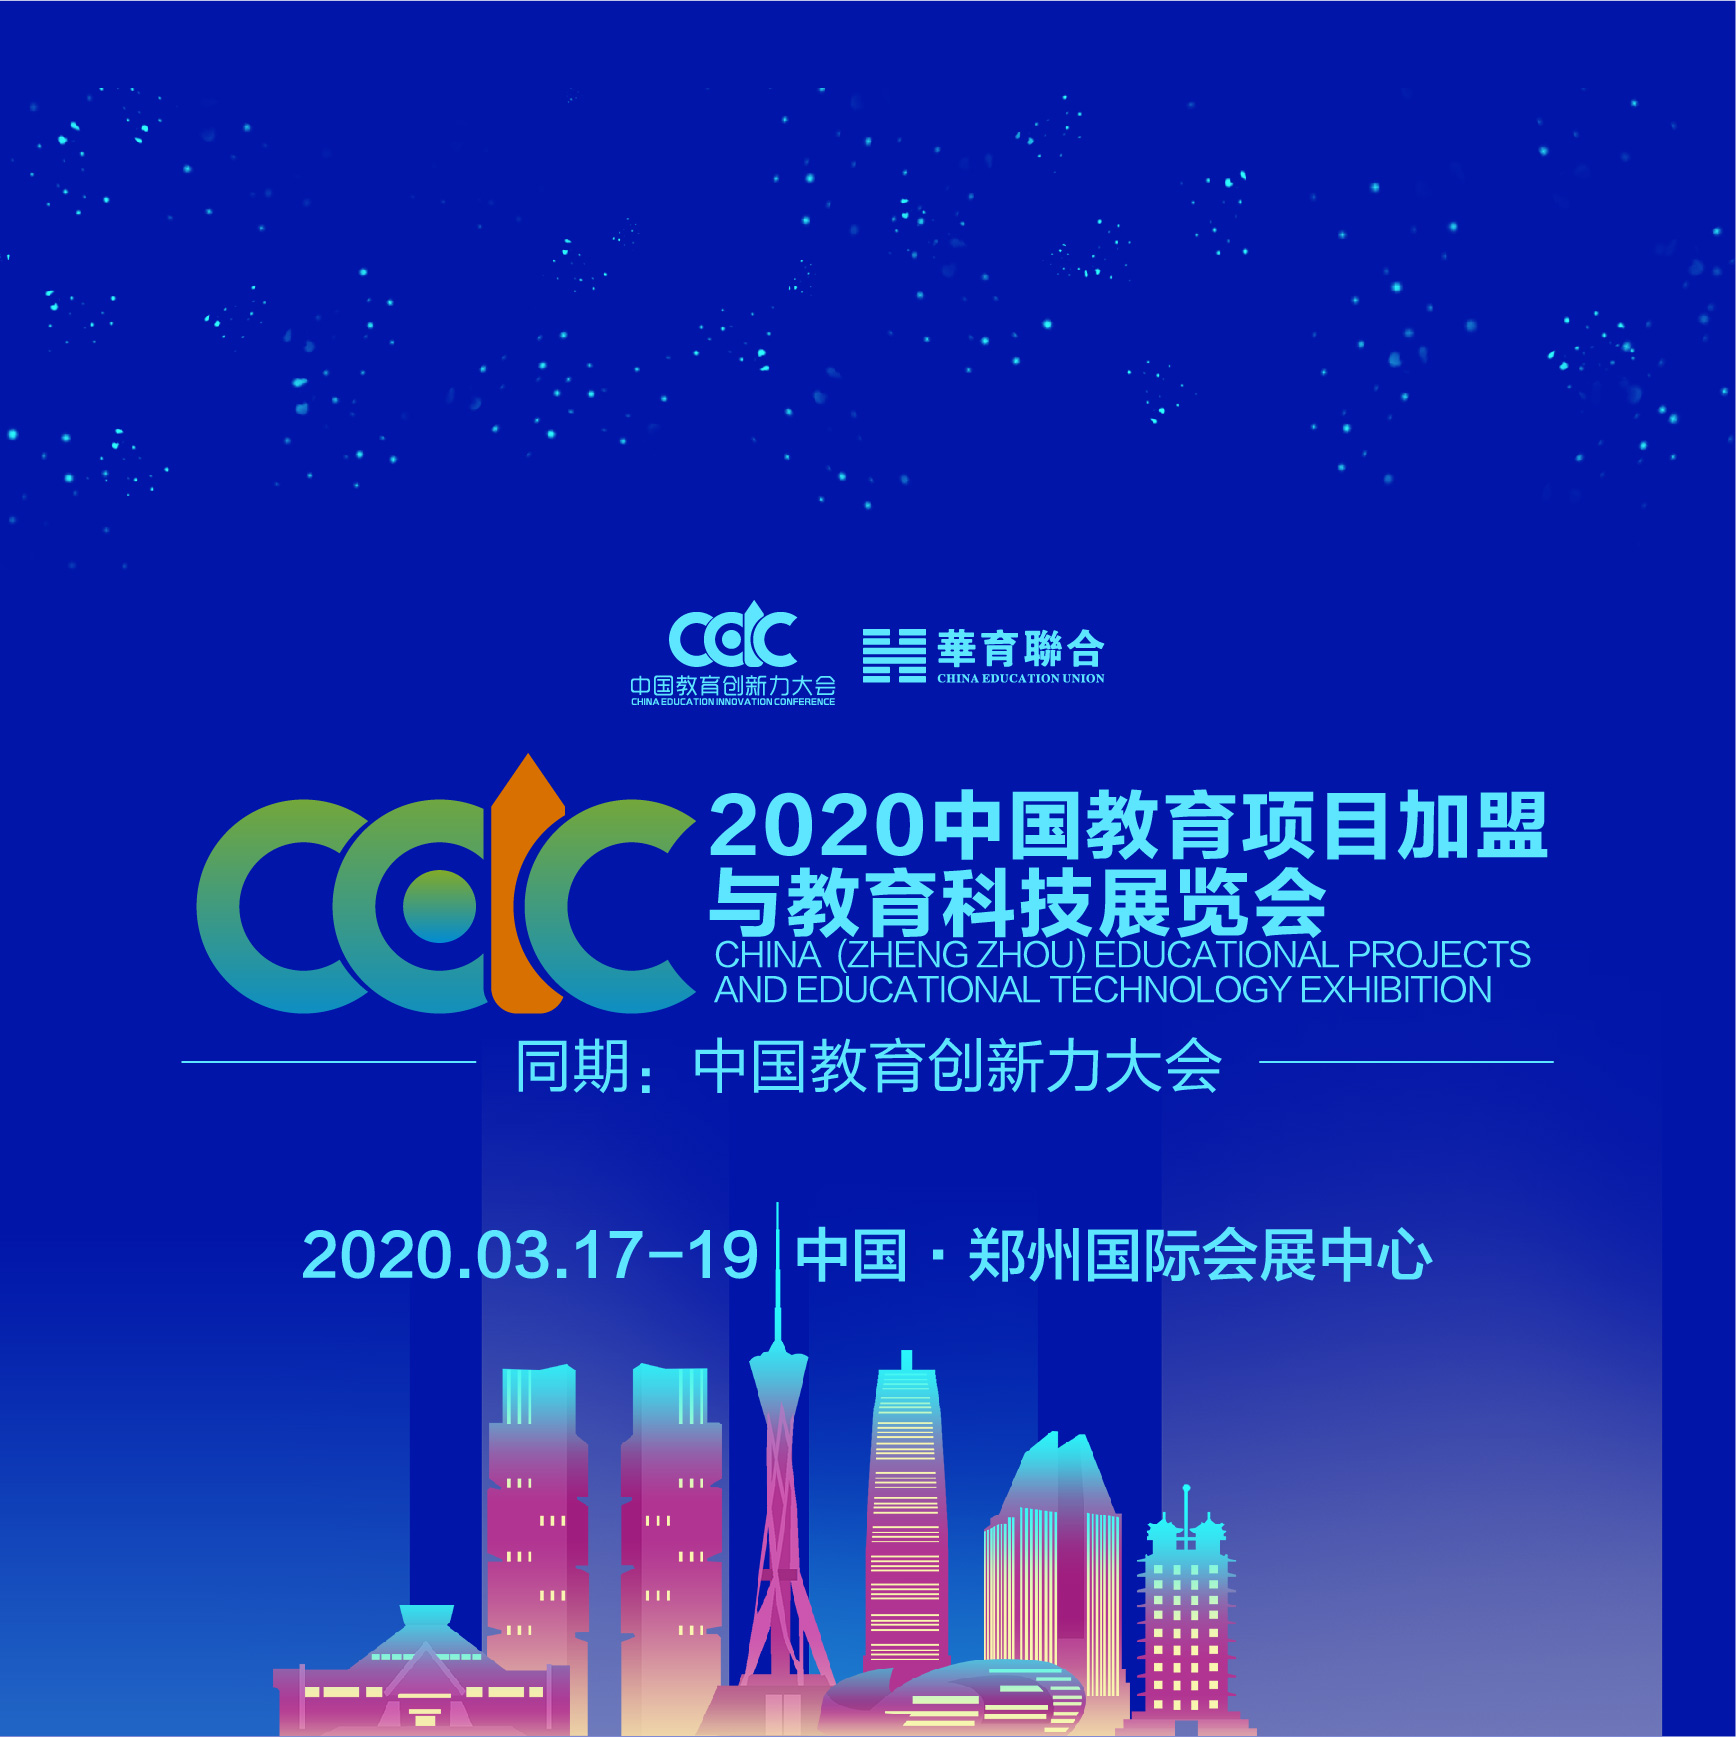 2020教育*展会暨中国教育创新力大会